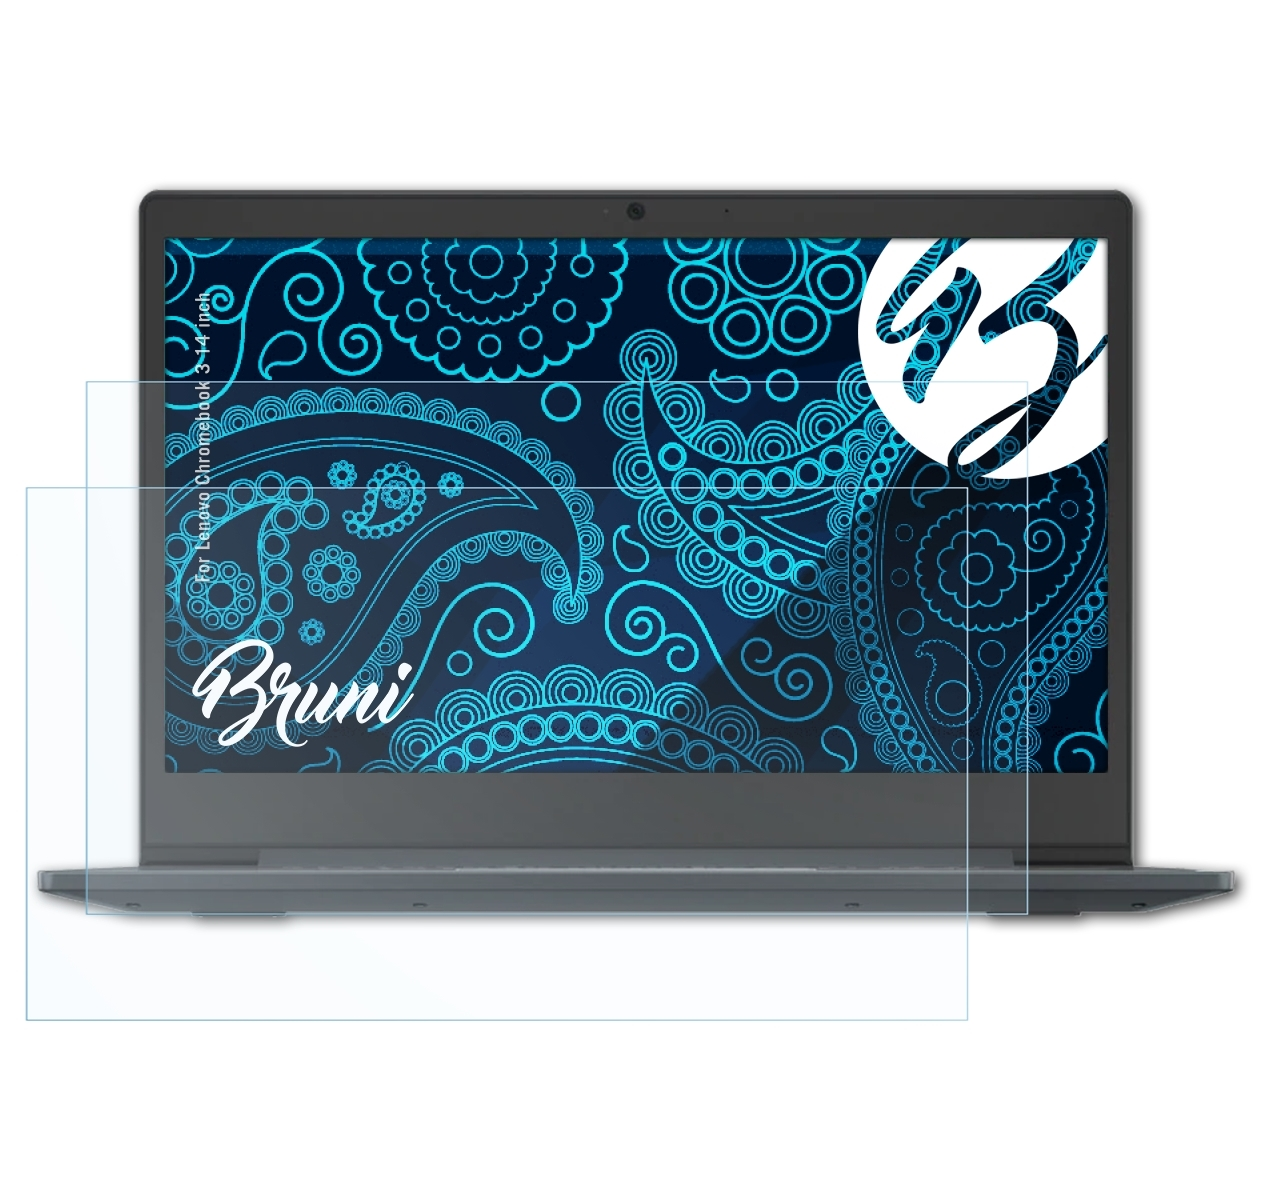 Chromebook (14 Basics-Clear inch)) 3 BRUNI 2x Lenovo Schutzfolie(für